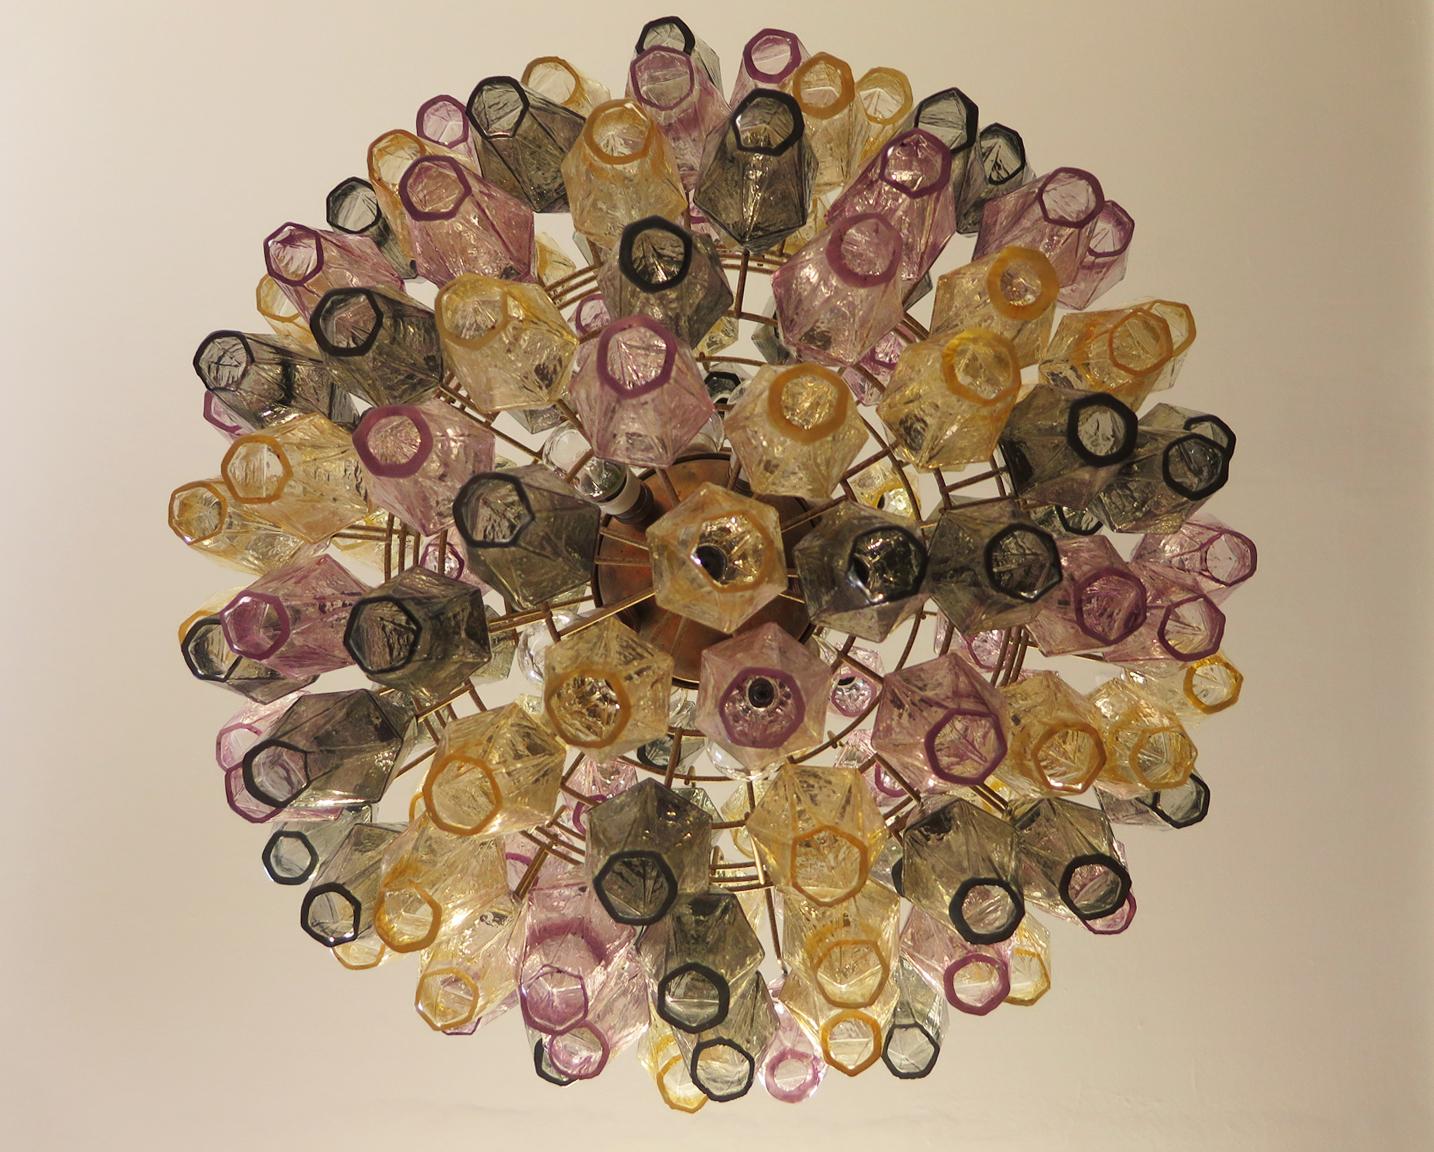 Amazing Spherical Murano Poliedri Chandelier, 140 Multicolored Glasses In Good Condition For Sale In Gaiarine Frazione Francenigo (TV), IT